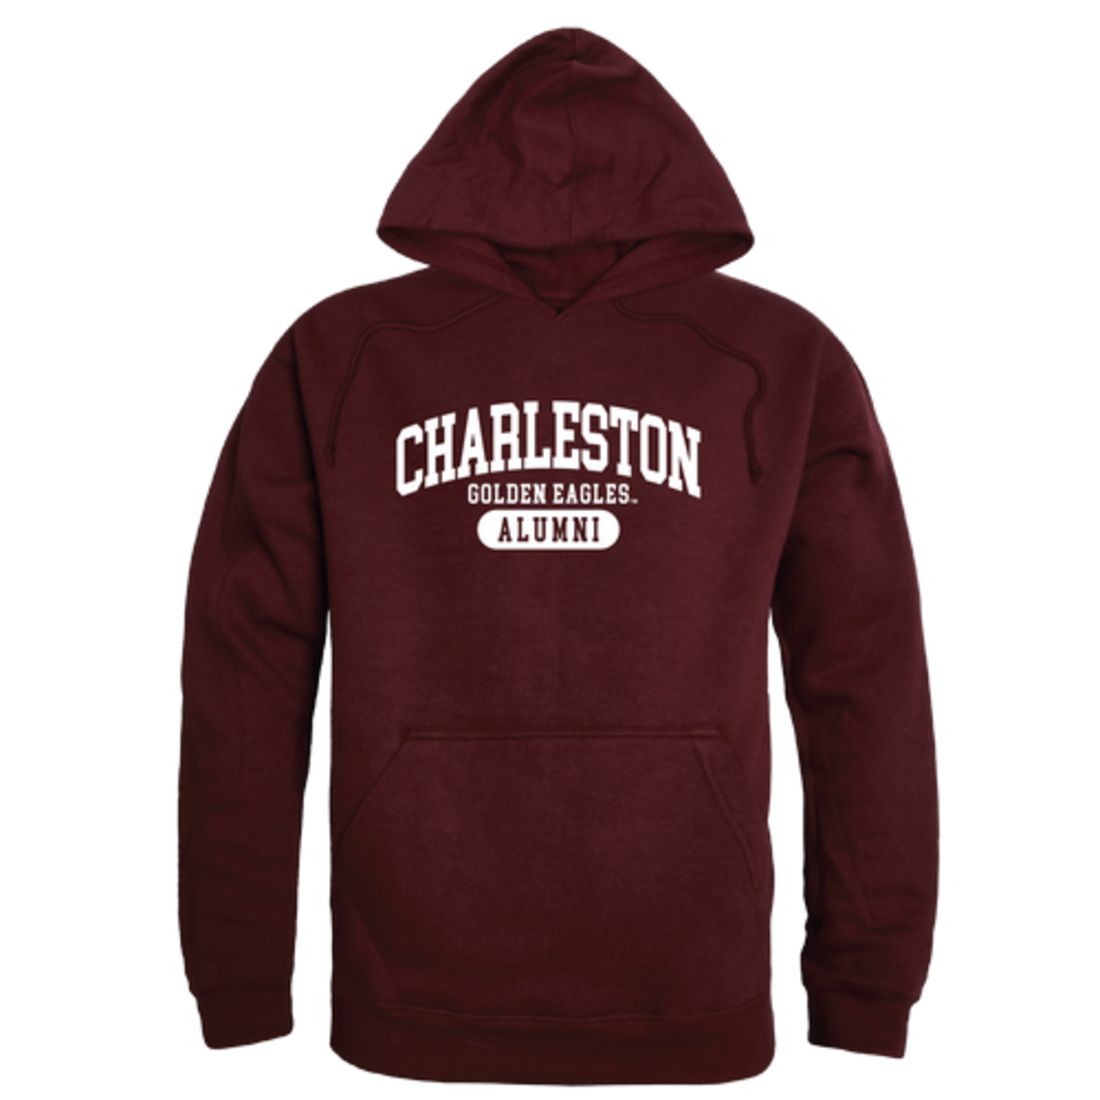 University of Charleston Golden Eagles Alumni Fleece Hoodie Sweatshirts